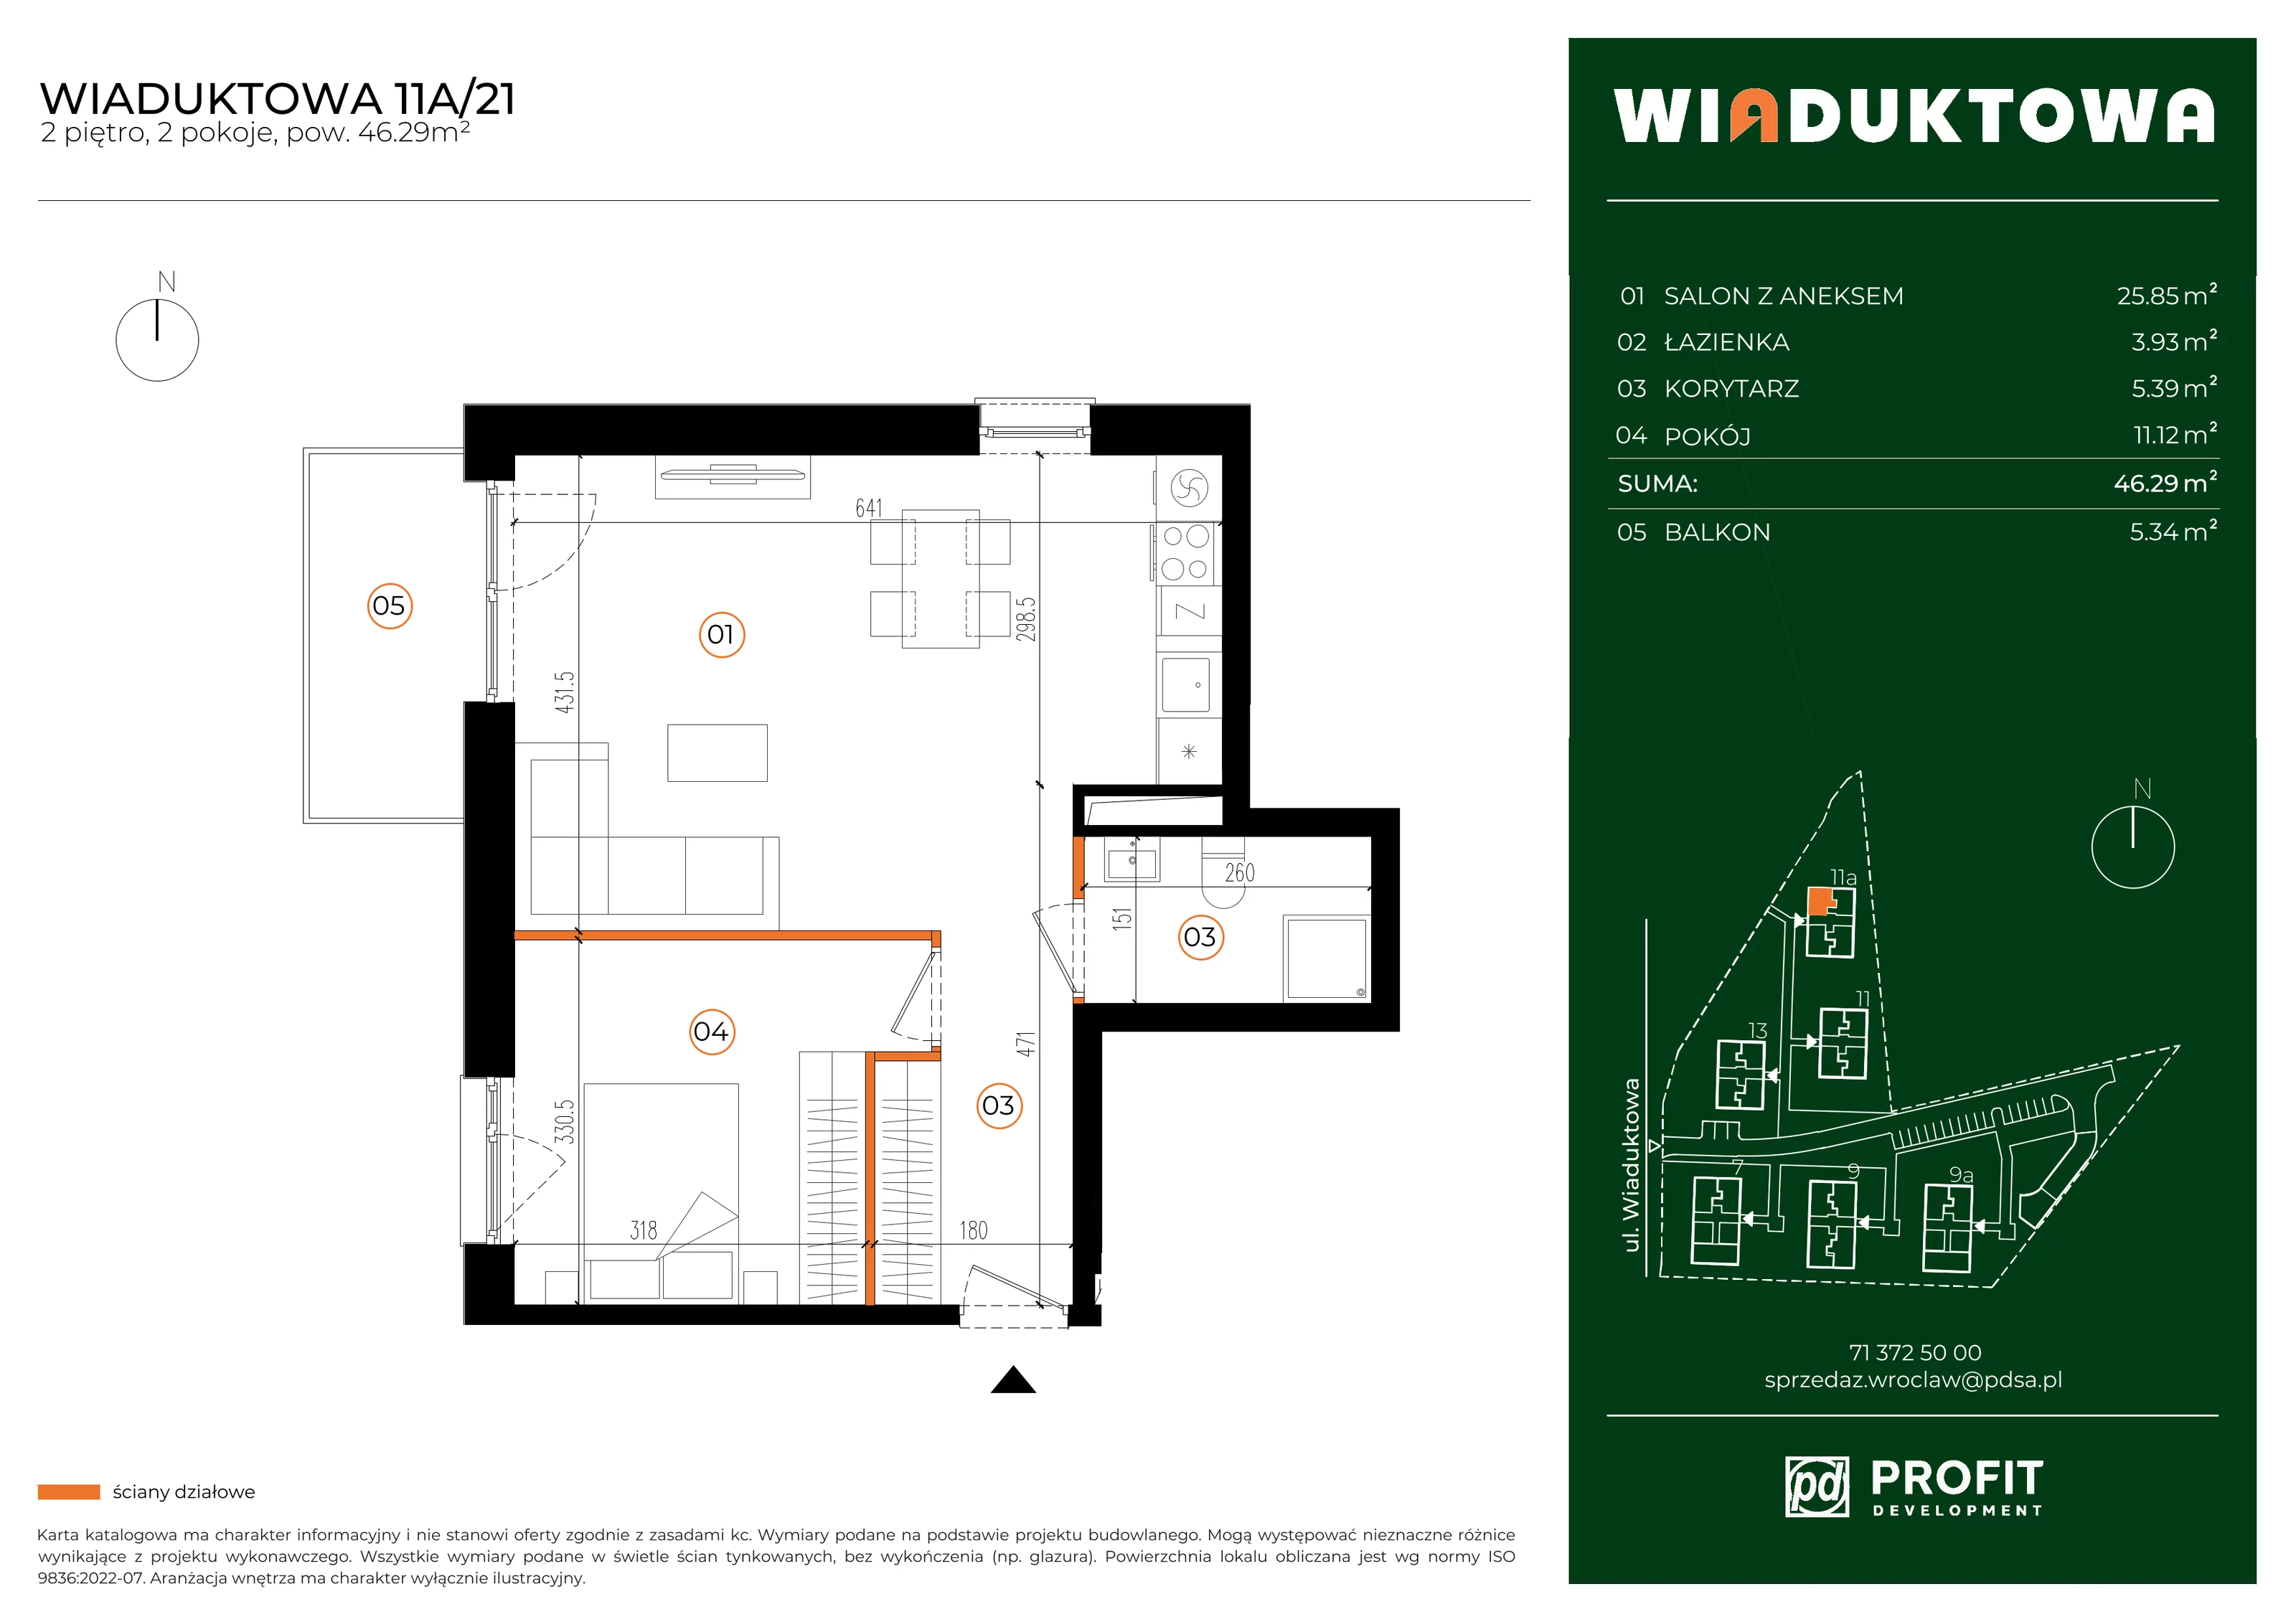 Mieszkanie 46,29 m², piętro 2, oferta nr WI/11A/21, Wiaduktowa, Wrocław, Krzyki-Partynice, Krzyki, ul. Wiaduktowa